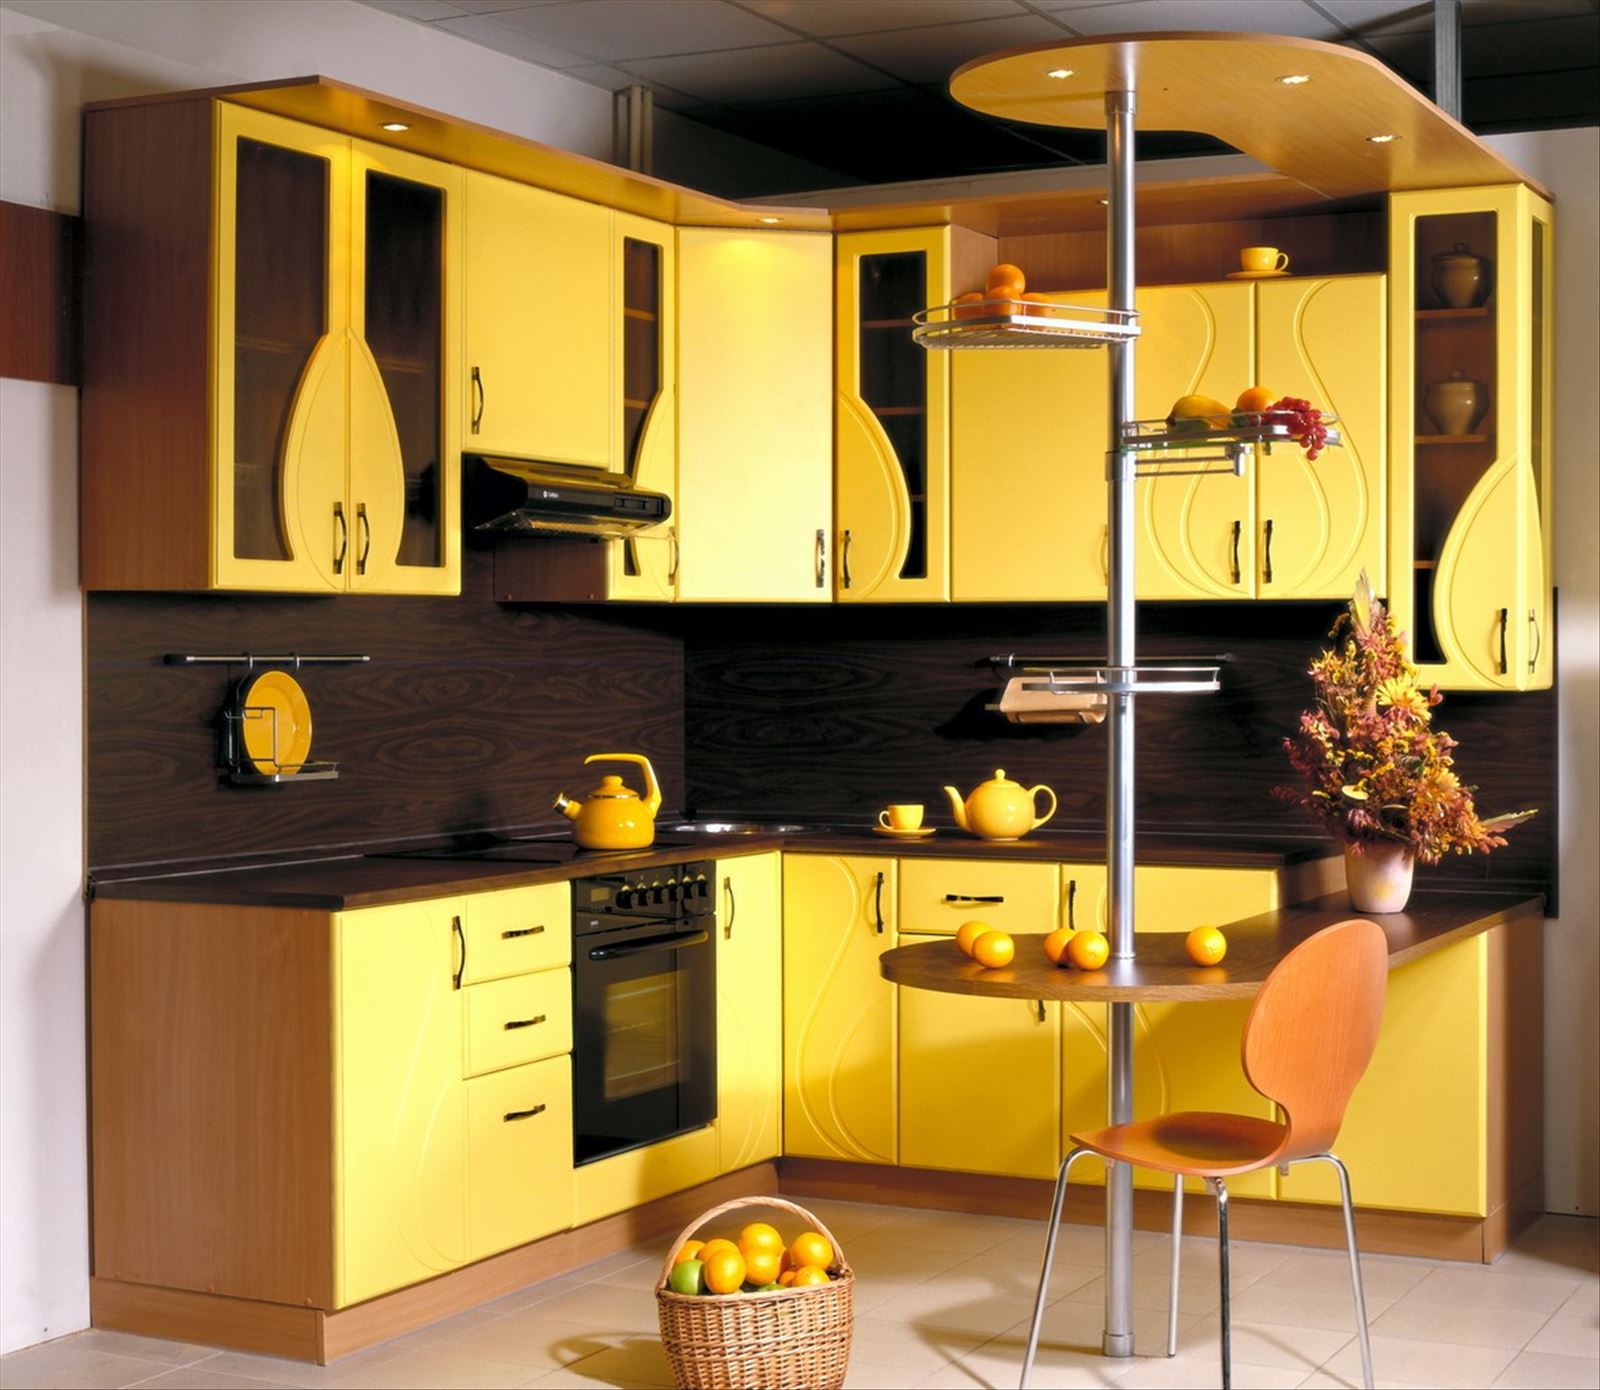 Кухни угловые хорошие. Яркий кухонный гарнитур. Желтый кухонный гарнитур. Красивая яркая кухня. Красивые кухонные гарнитуры.